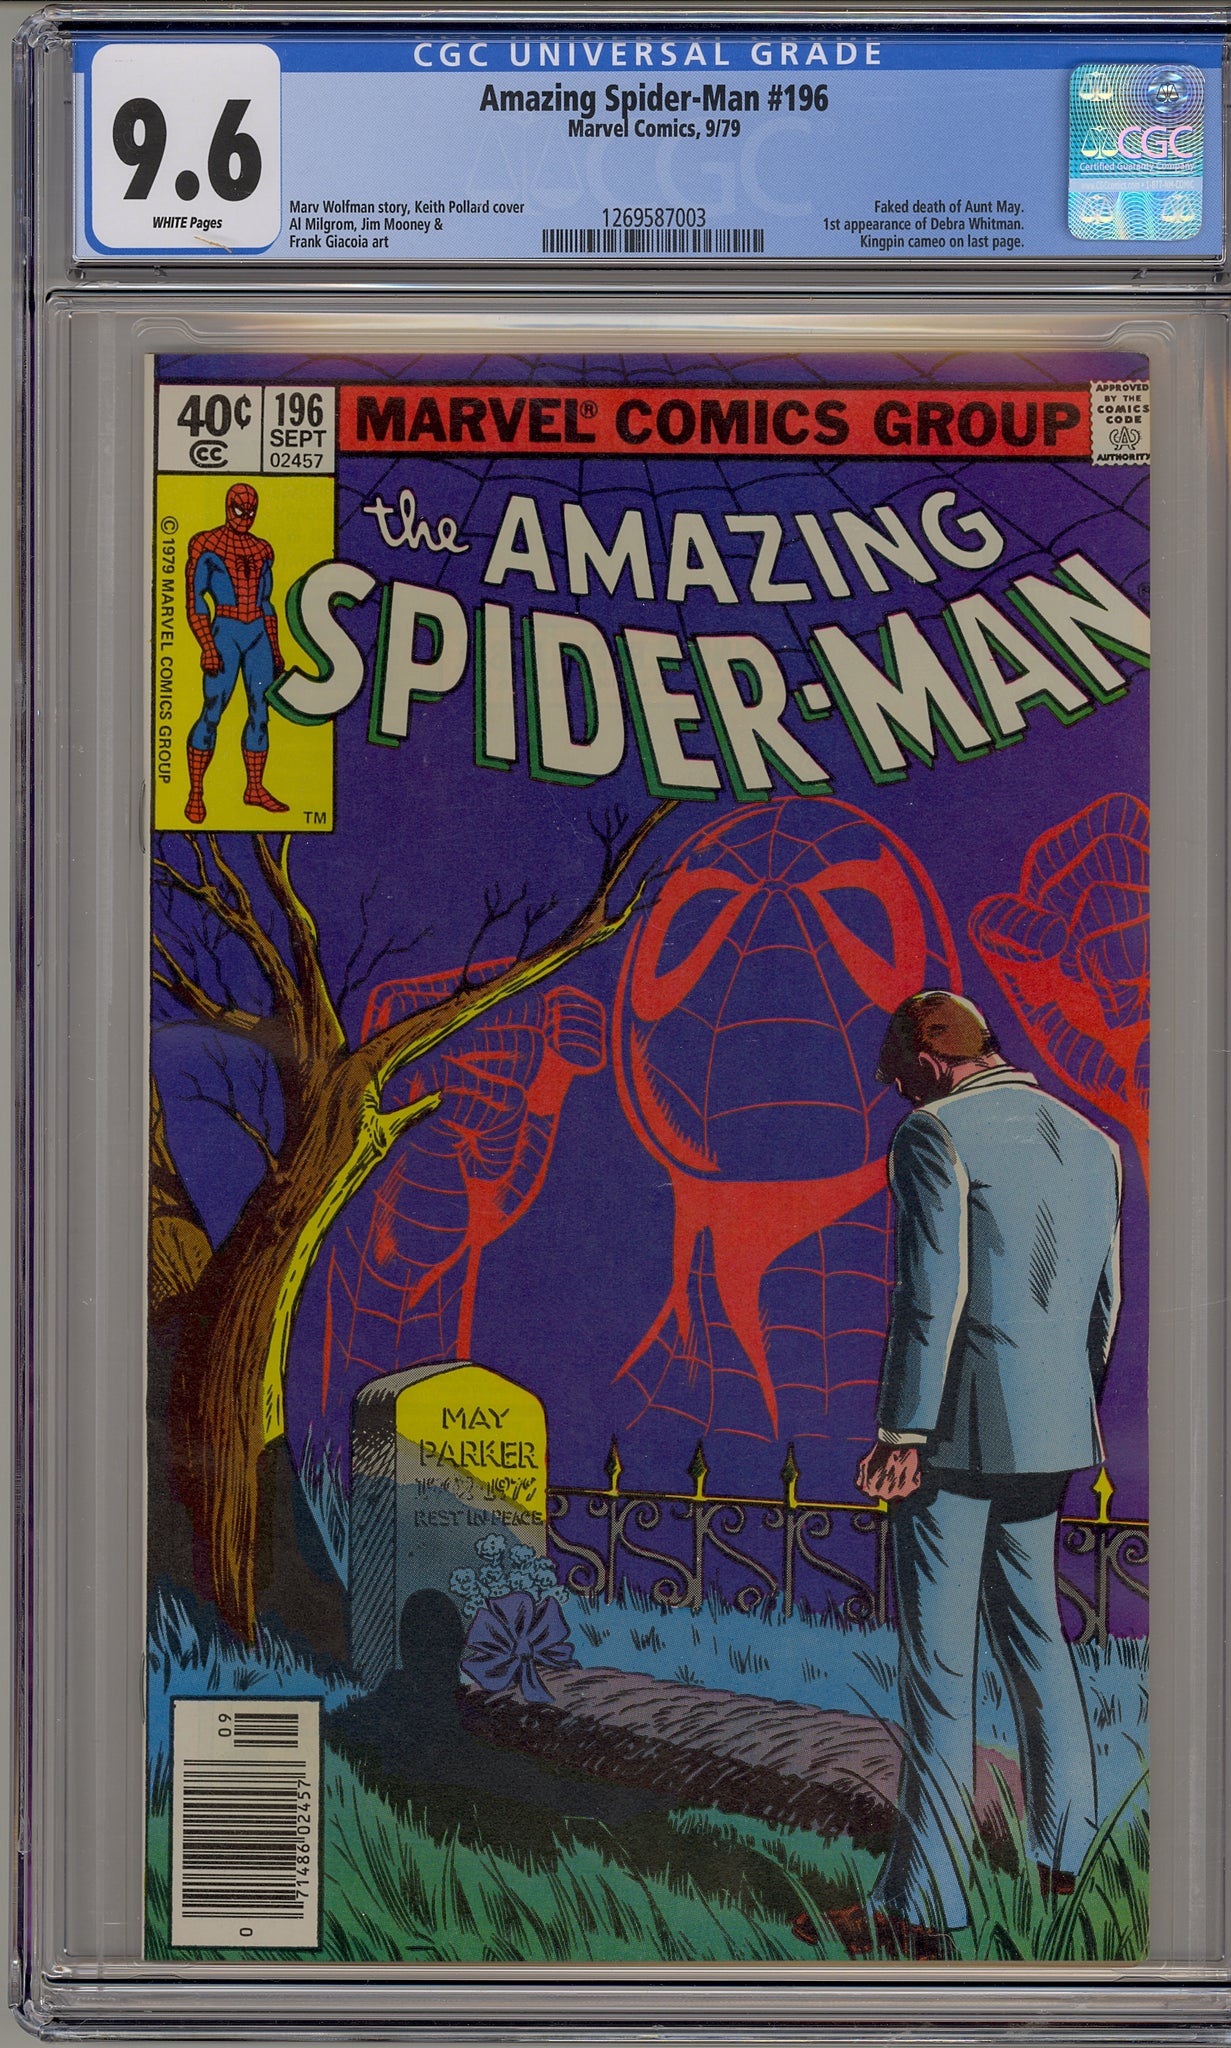 Amazing Spider-Man #196 (1979)